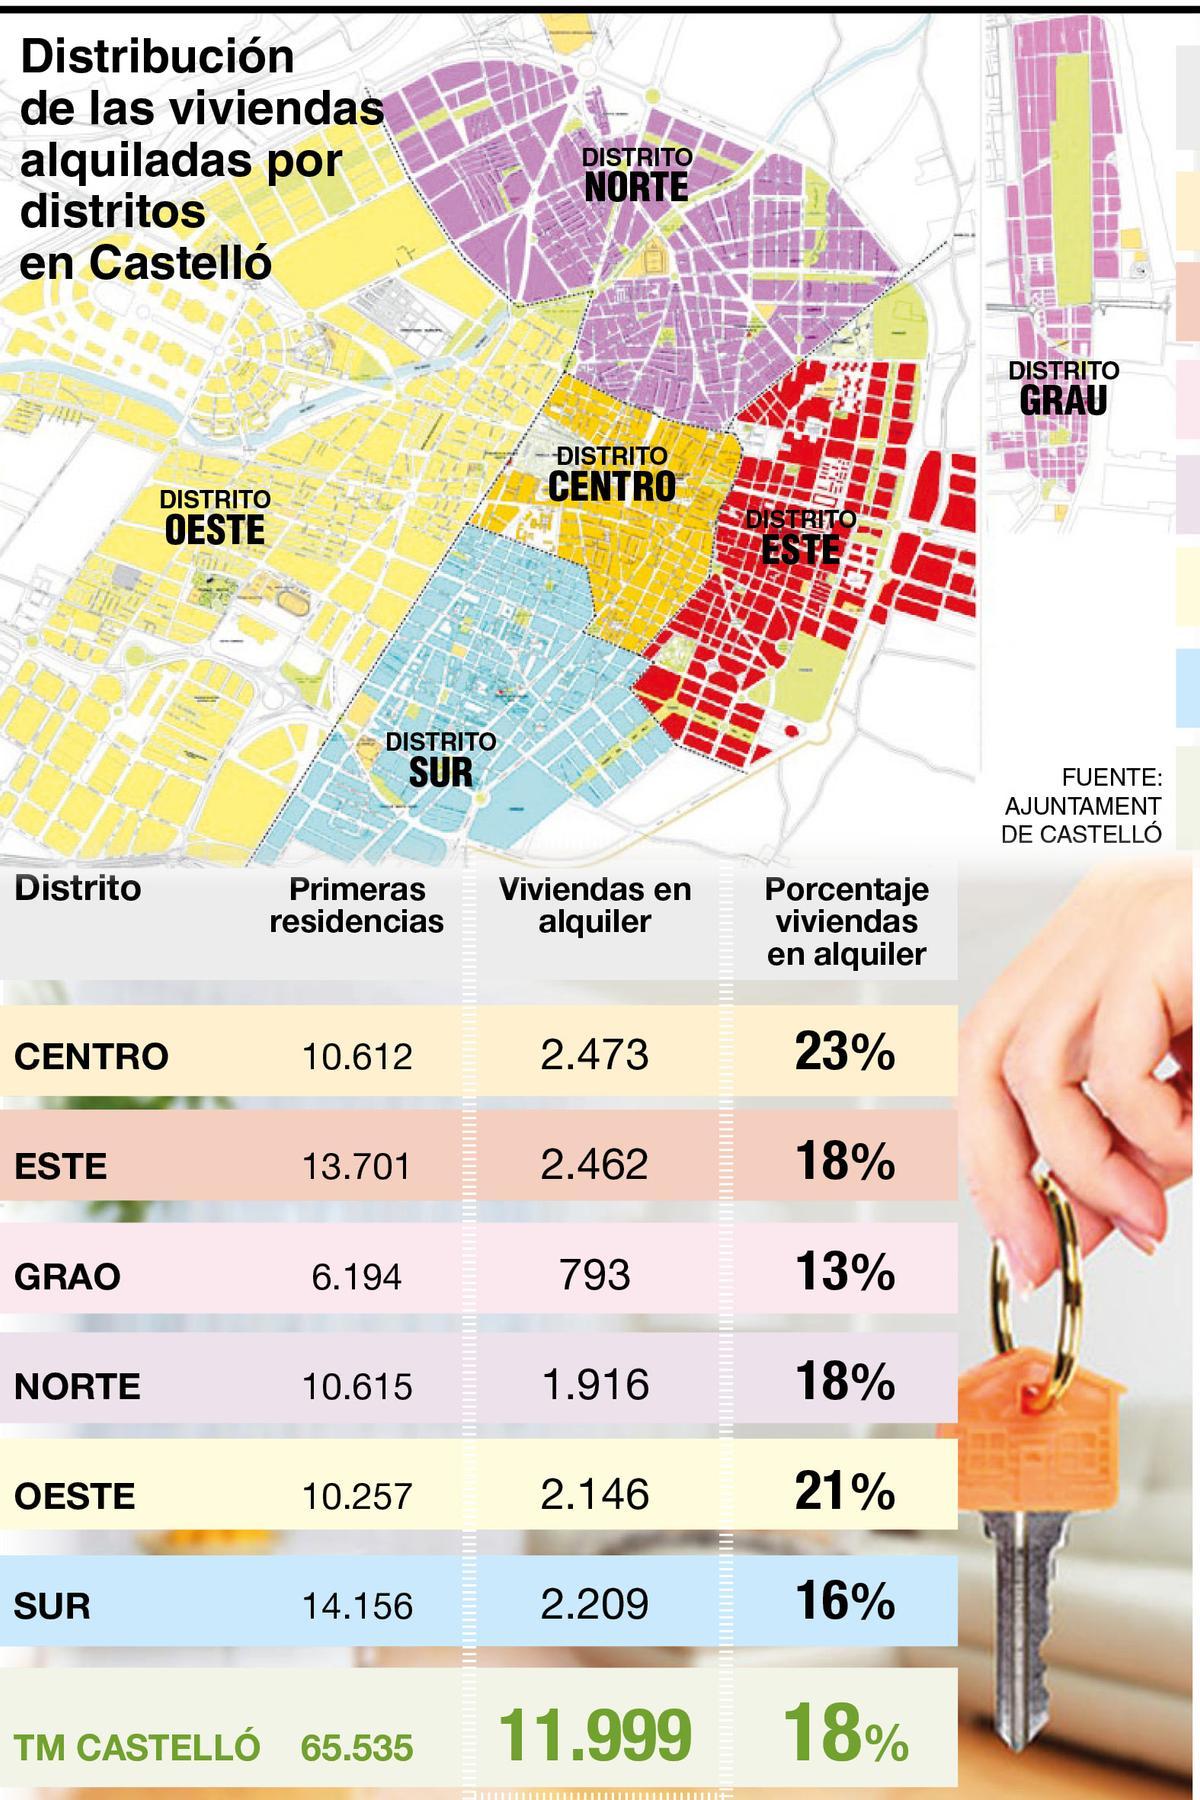 Distribución de las viviendas alquiladas por distritos en Castelló